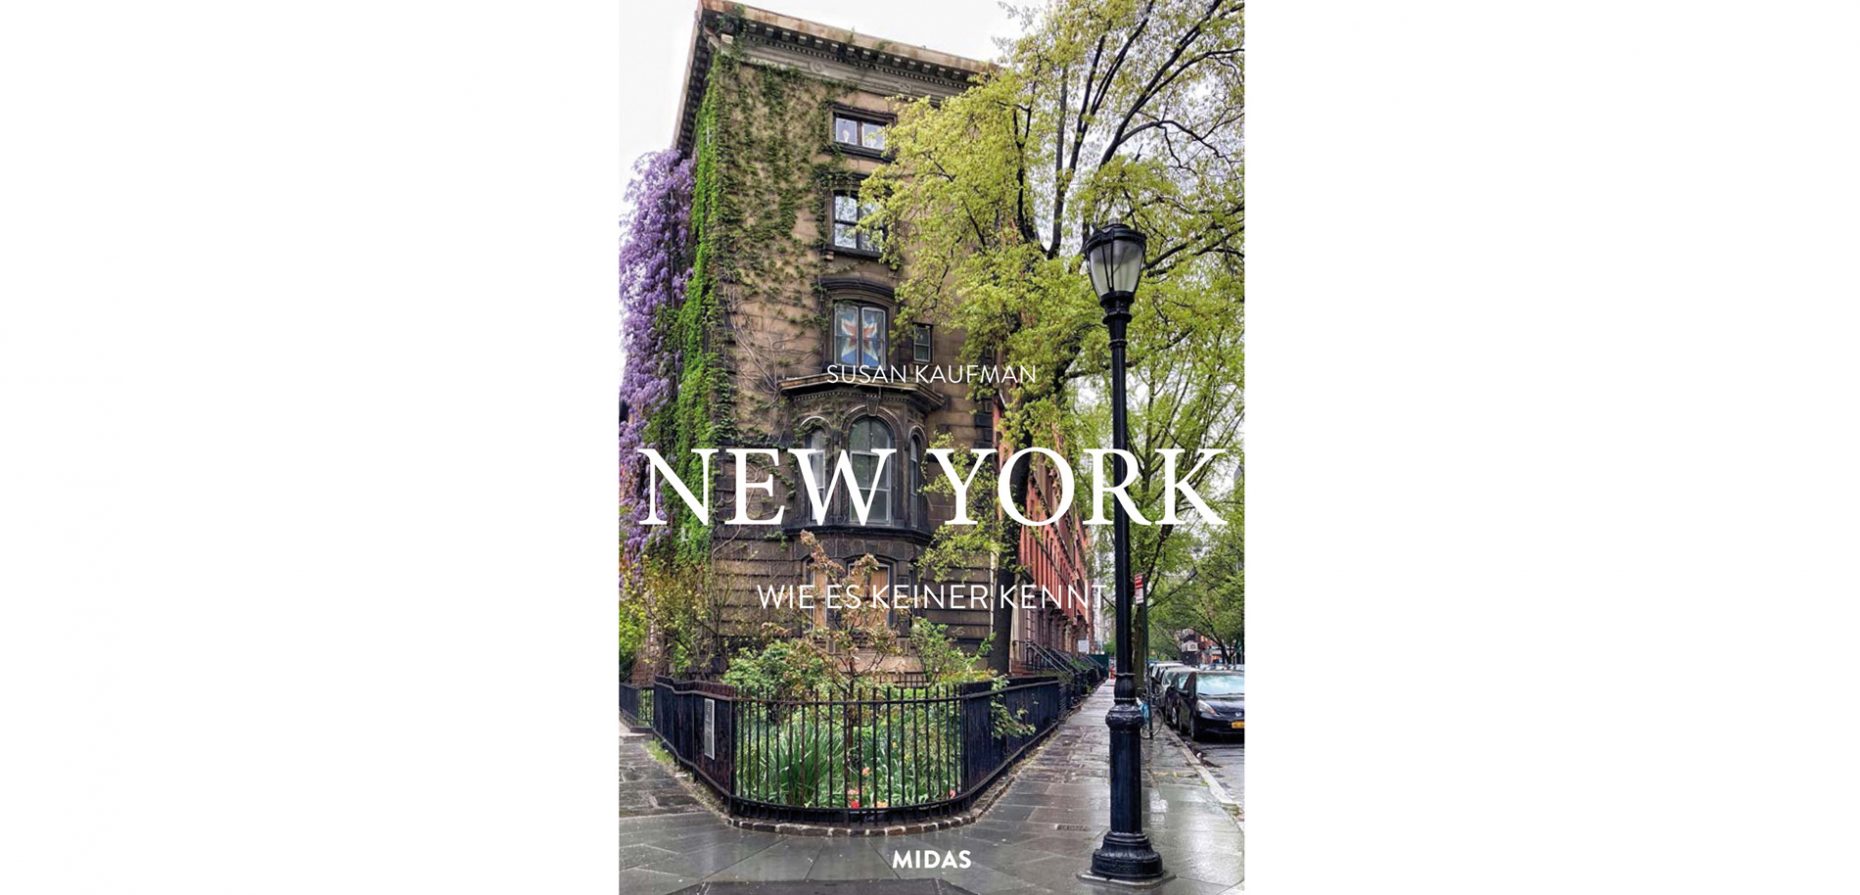 New York, wie es keiner kennt, ist ein Buch für Fans der heimlichen Hauptstadt der USA, die den Big Apple jenseits aller Klischees entdecken möchten. Erschienen ist es im Midas Verlag aus Zürich.